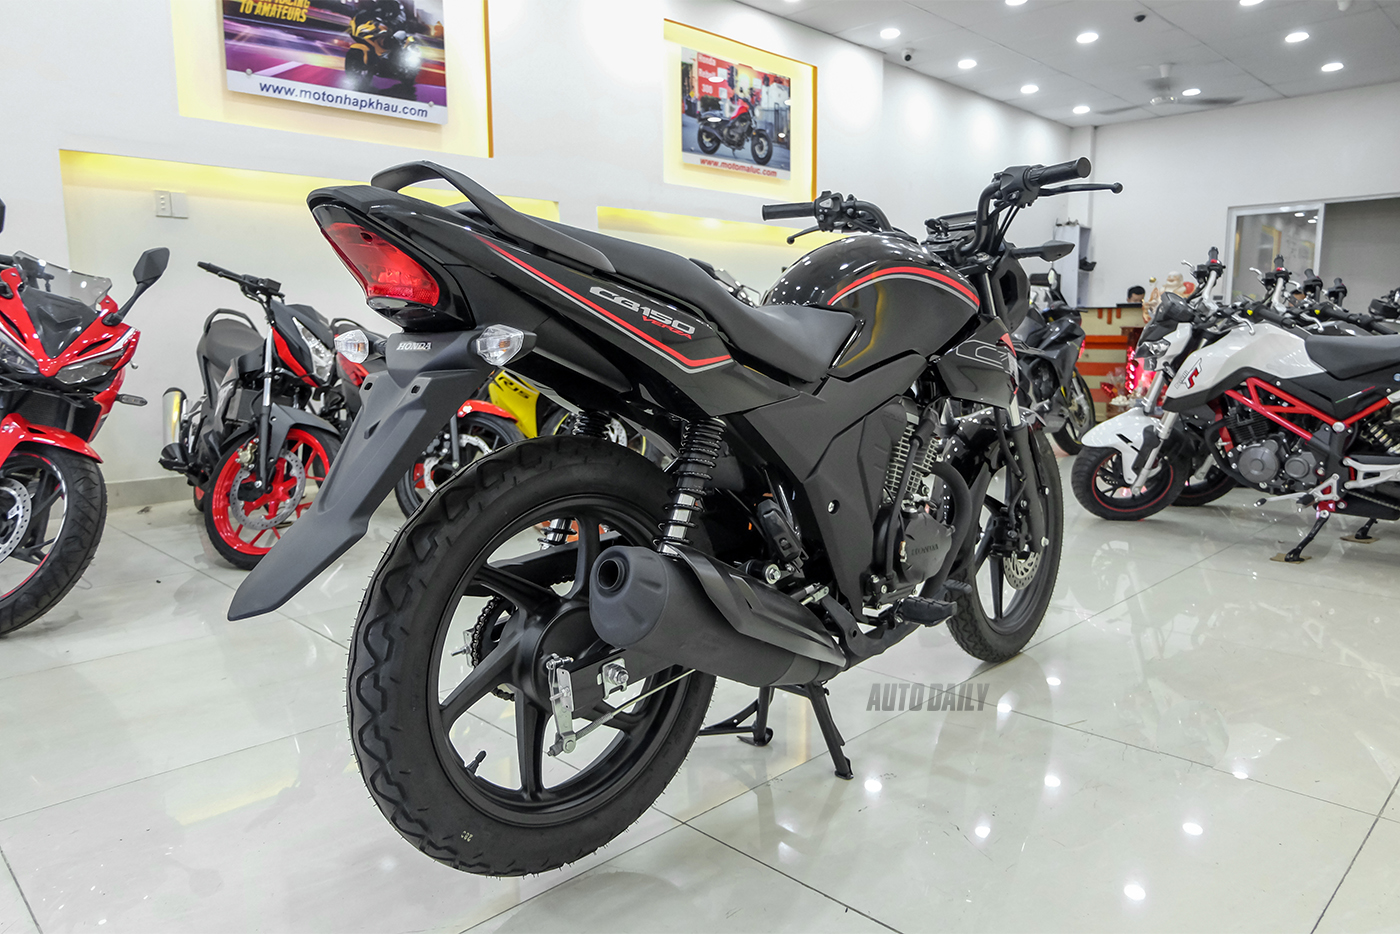 Honda CB150 Verza 2018 đầu tiên về Việt Nam có giá hơn 40 triệu đồng